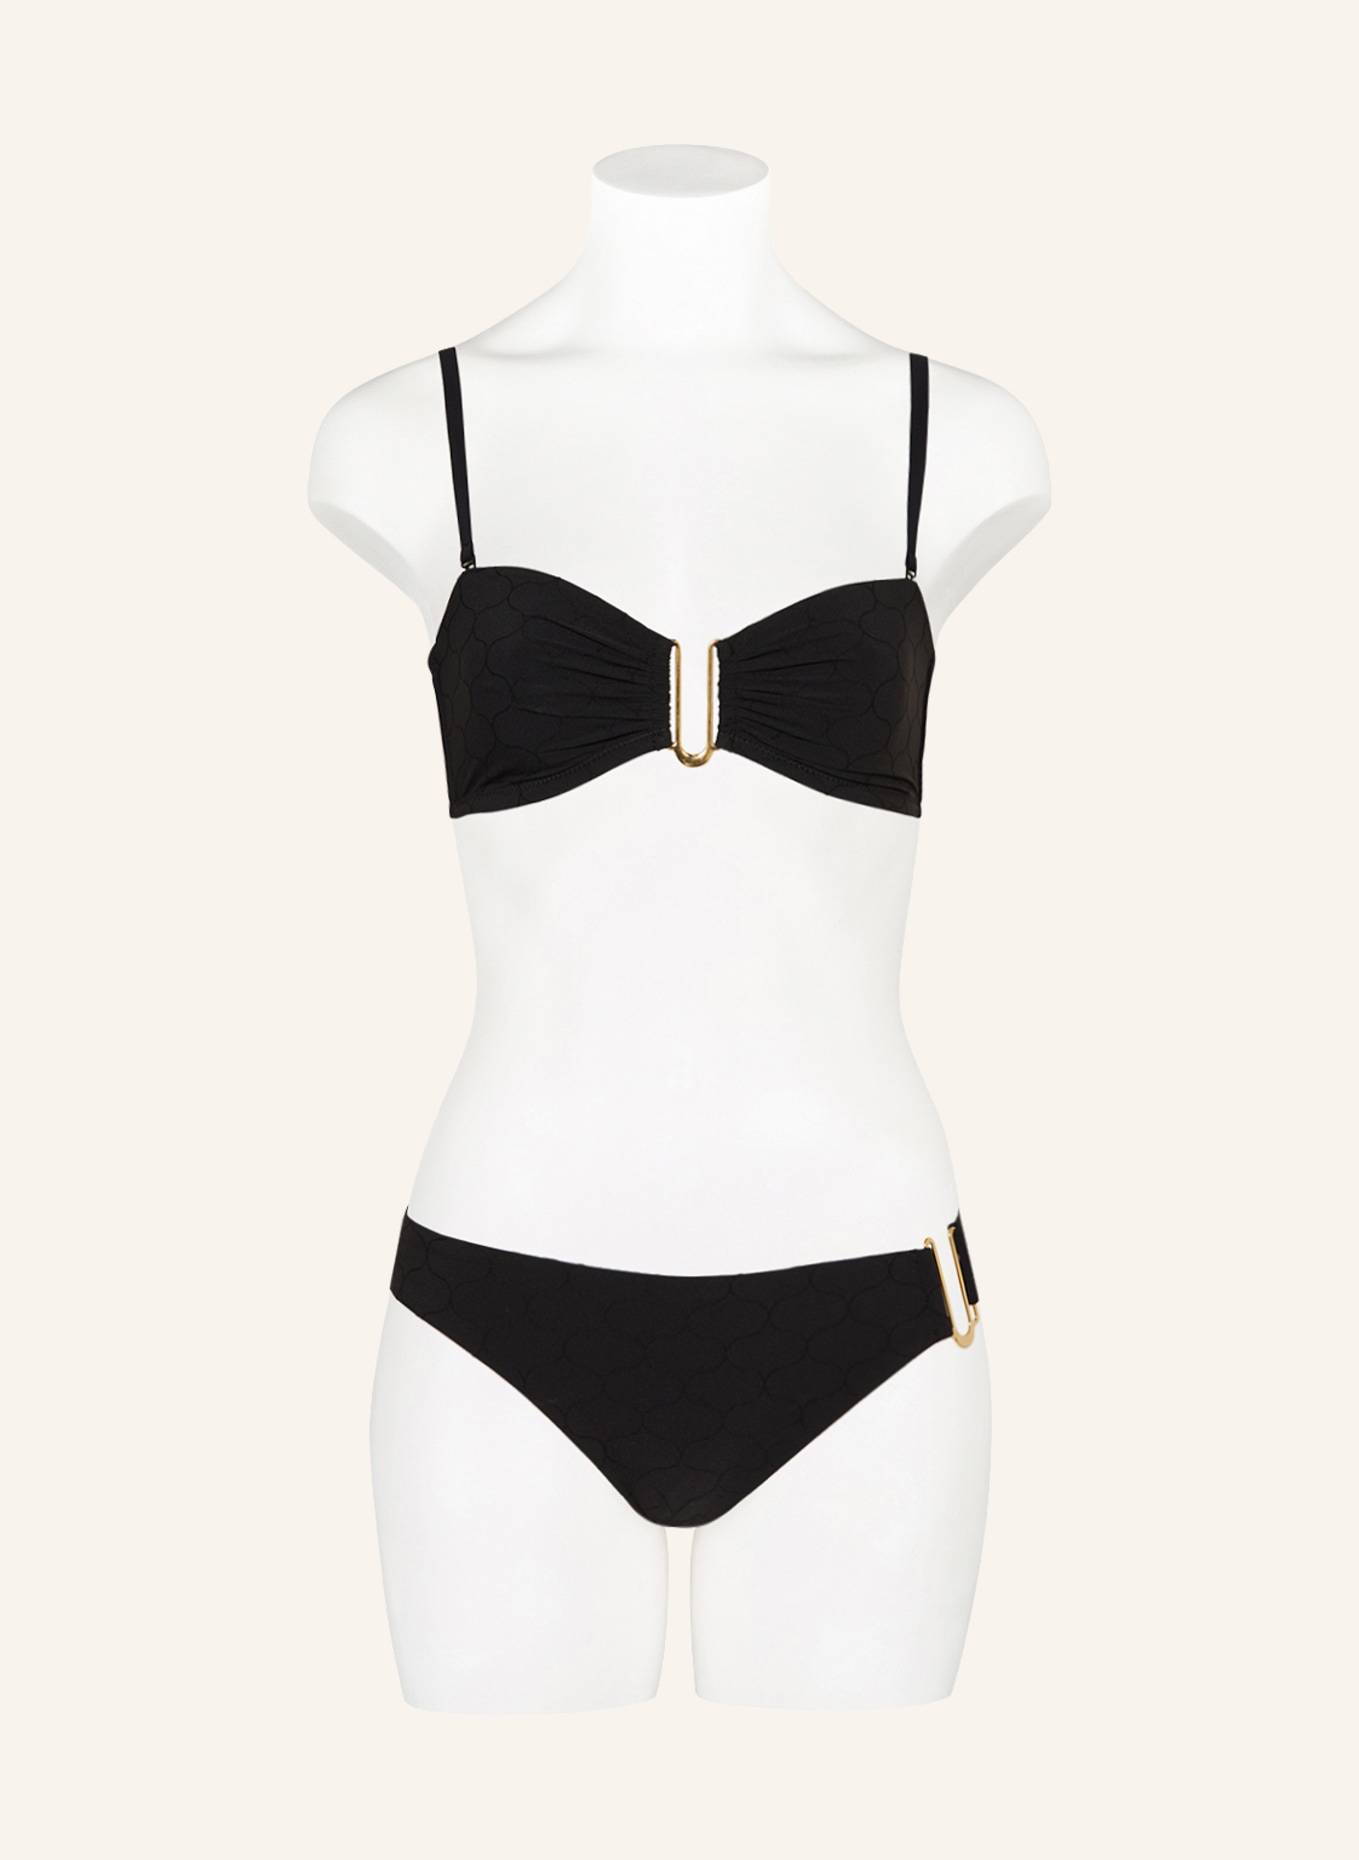 CHANTELLE Bralette bikini top GLOW, Color: BLACK (Image 2)